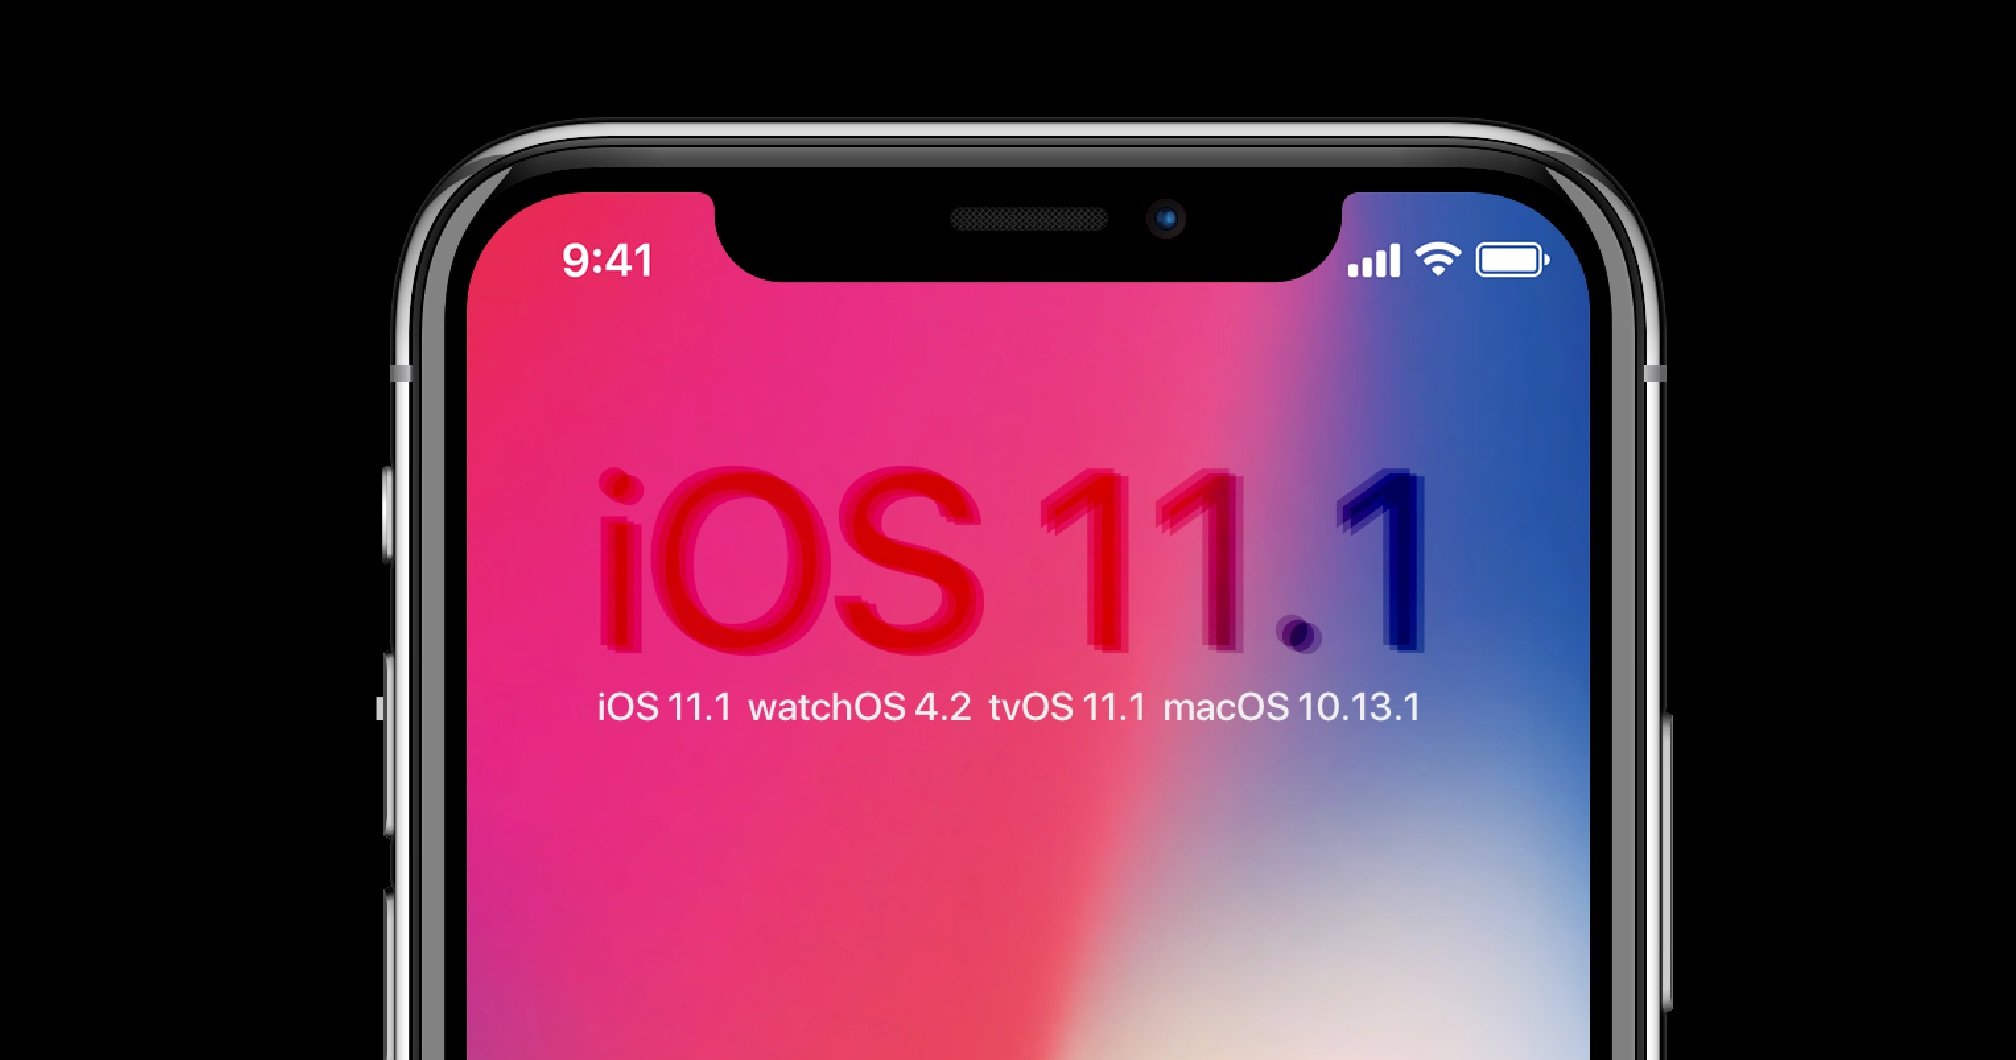 Update: iOS 11.1, watchOS 4.1, tvOS 11.1 & macOS High Sierra 10.13.1 8